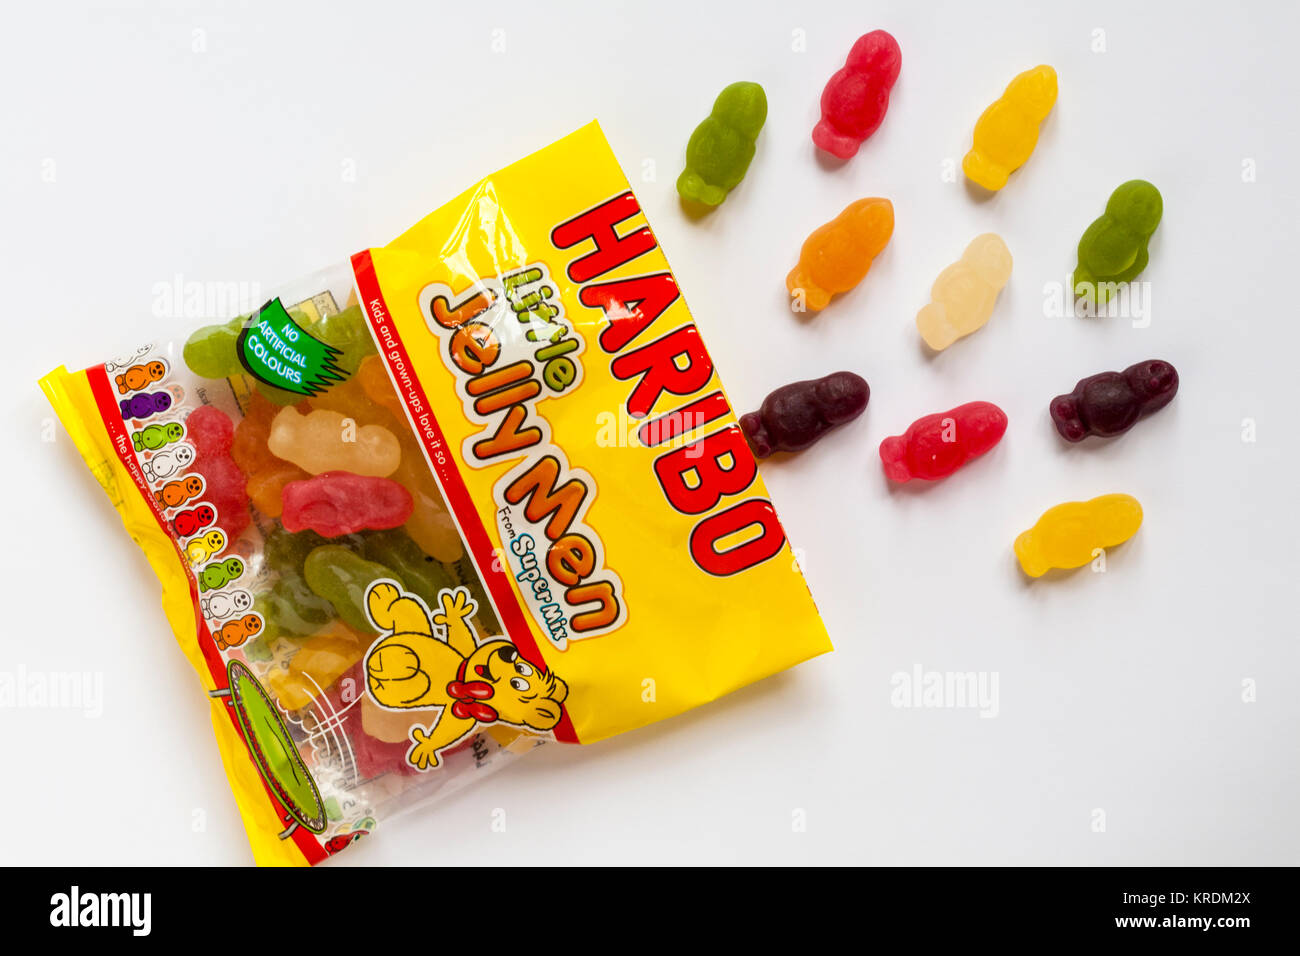 Paket von Haribo wenig Gelee Männer aus super Mix Bonbons geöffnet Inhalte  auf weißem Hintergrund zu zeigen Stockfotografie - Alamy